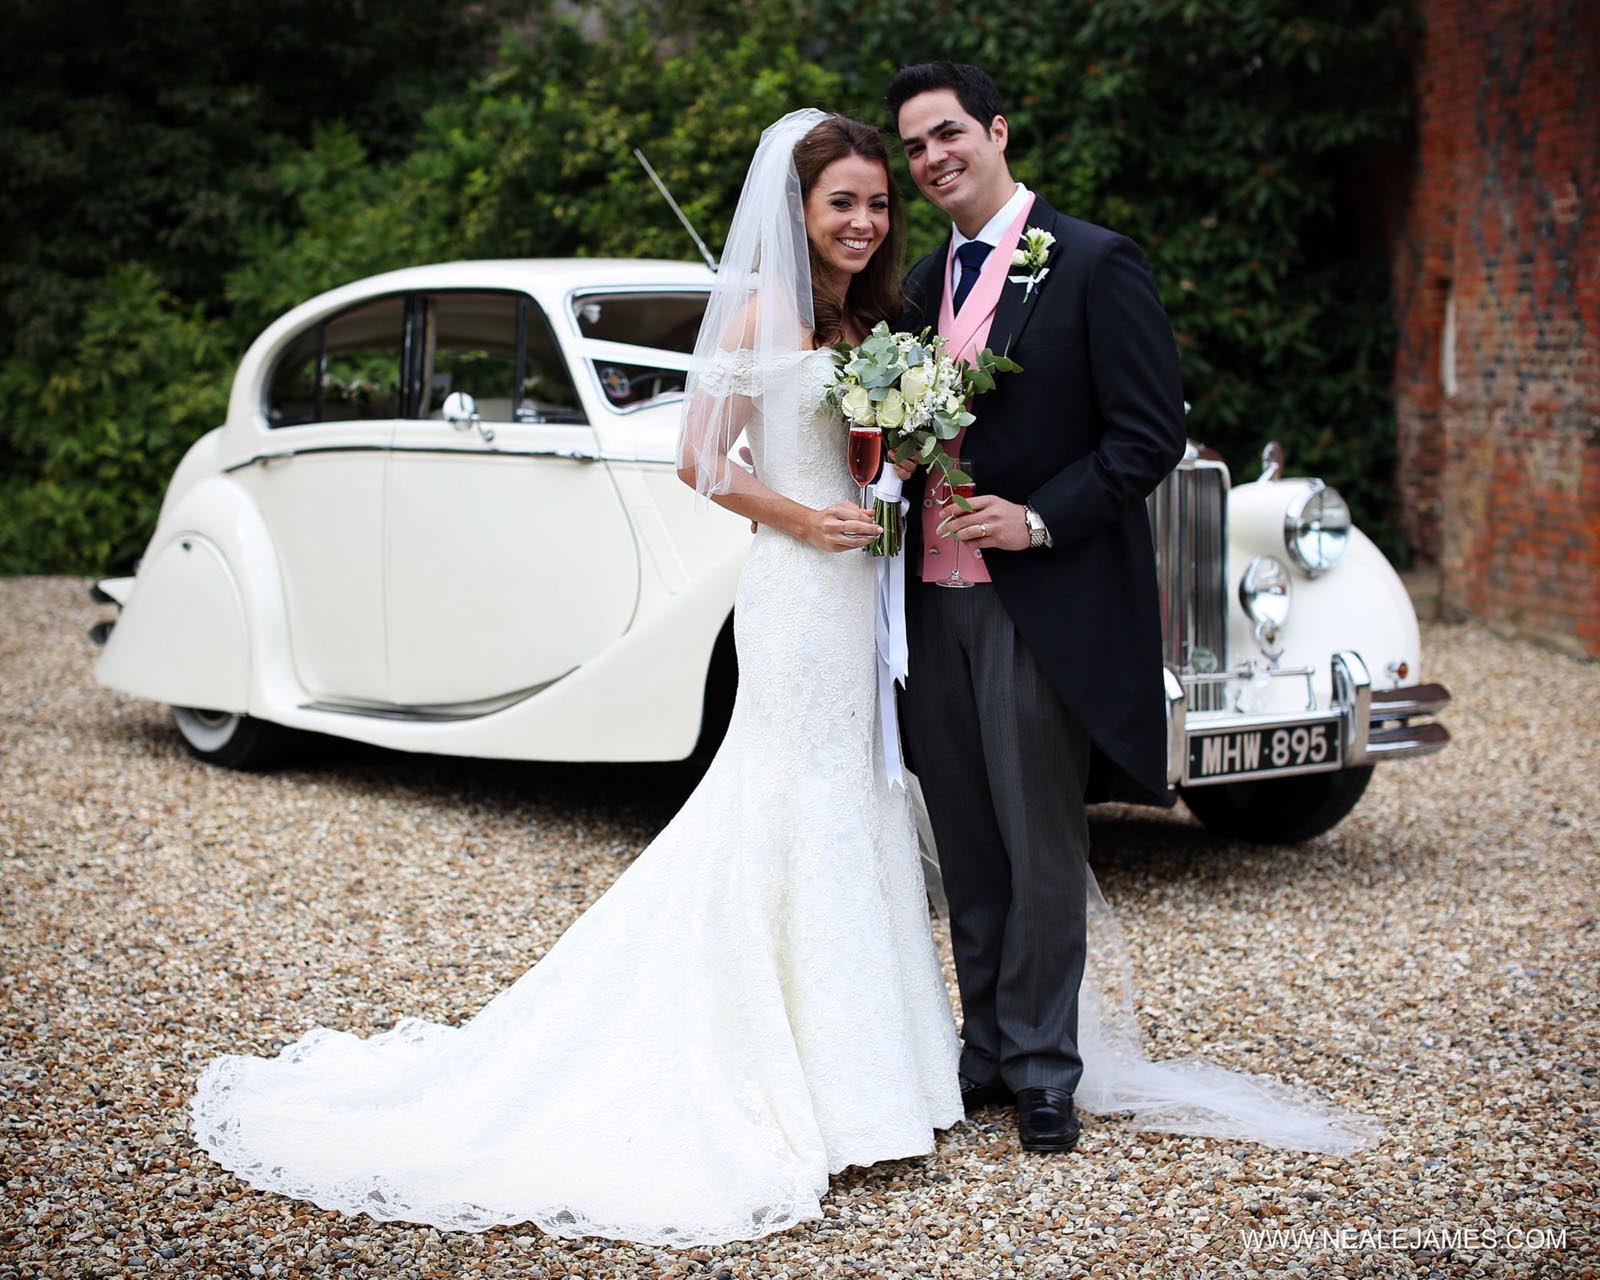 Newlyweds with their wedding car at Farnham Castle